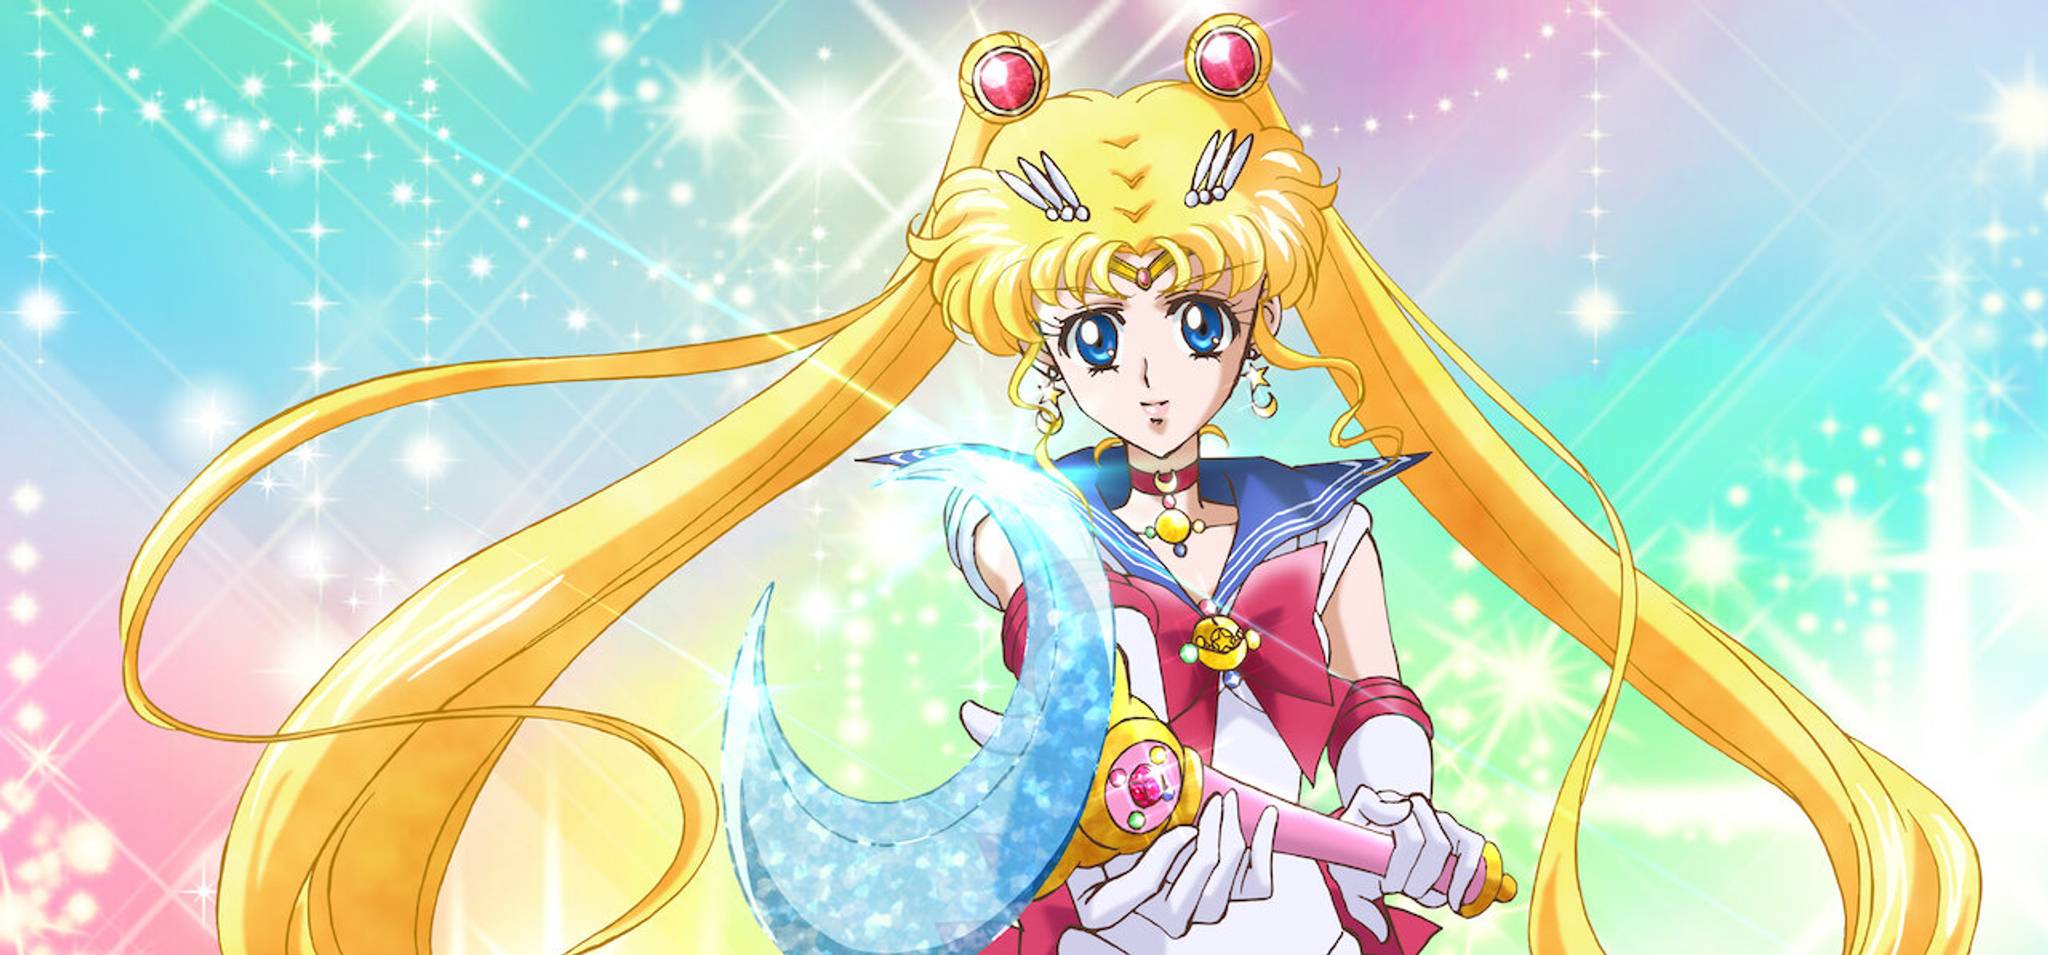 ‘Sailor Moon’: subversive femininity for Gen Z viewers